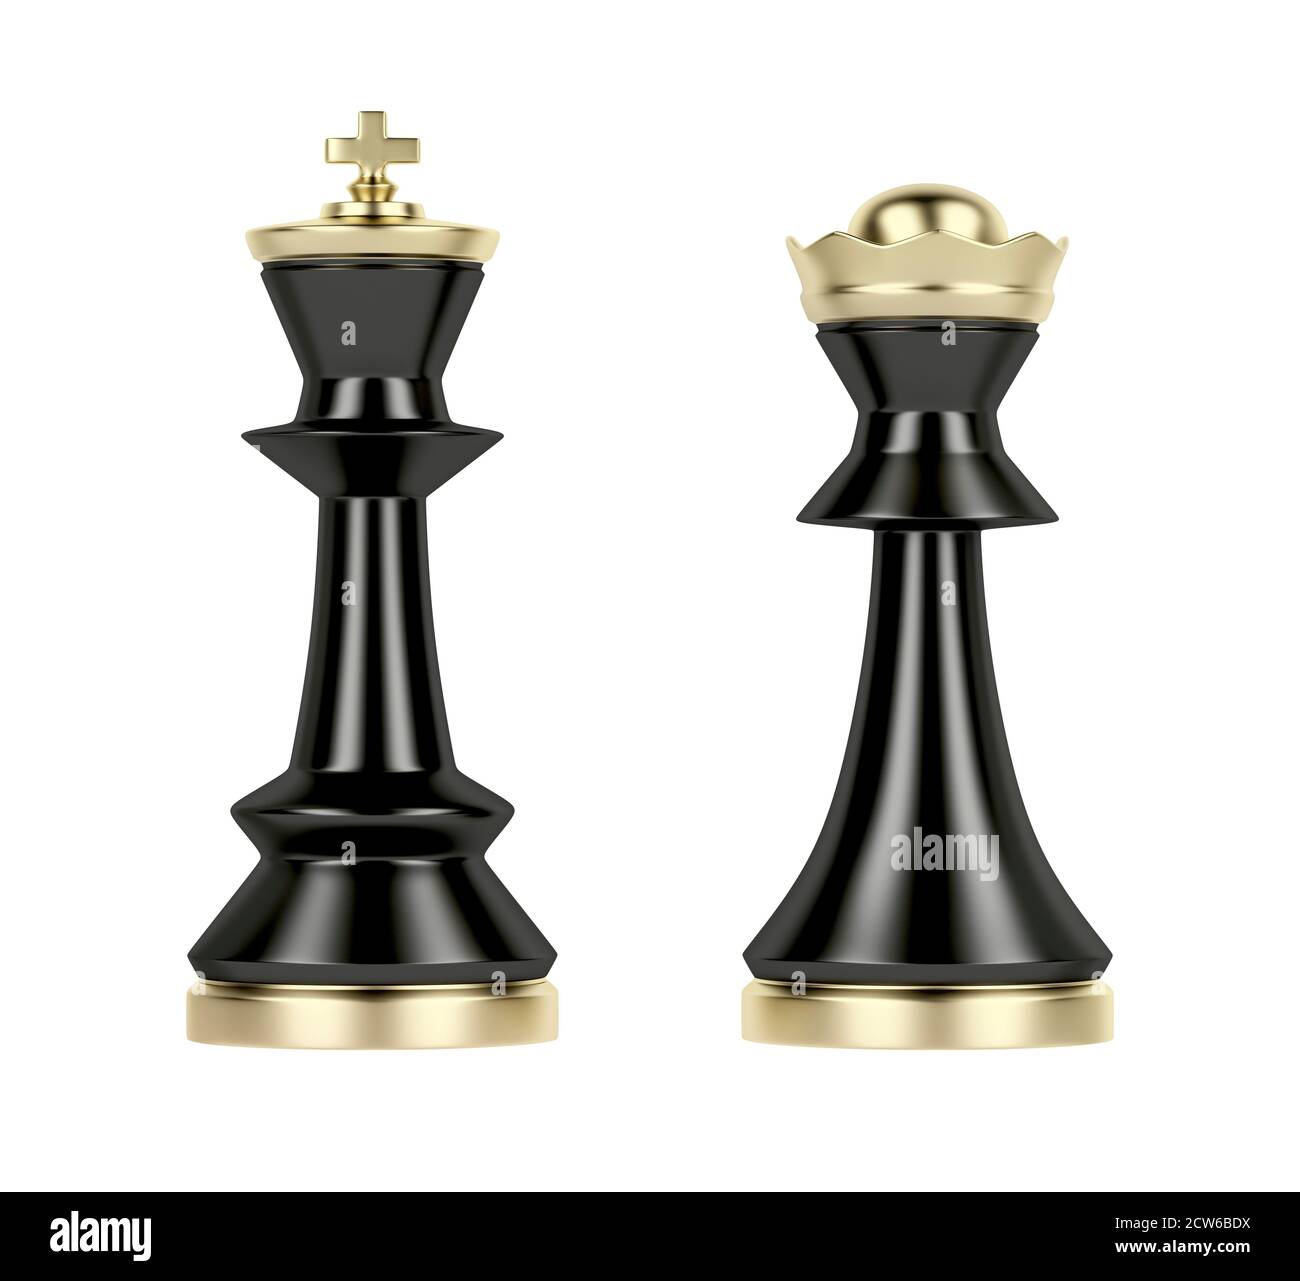 Ajedrez - El rey - 05: Interacción del rey con sus piezas 